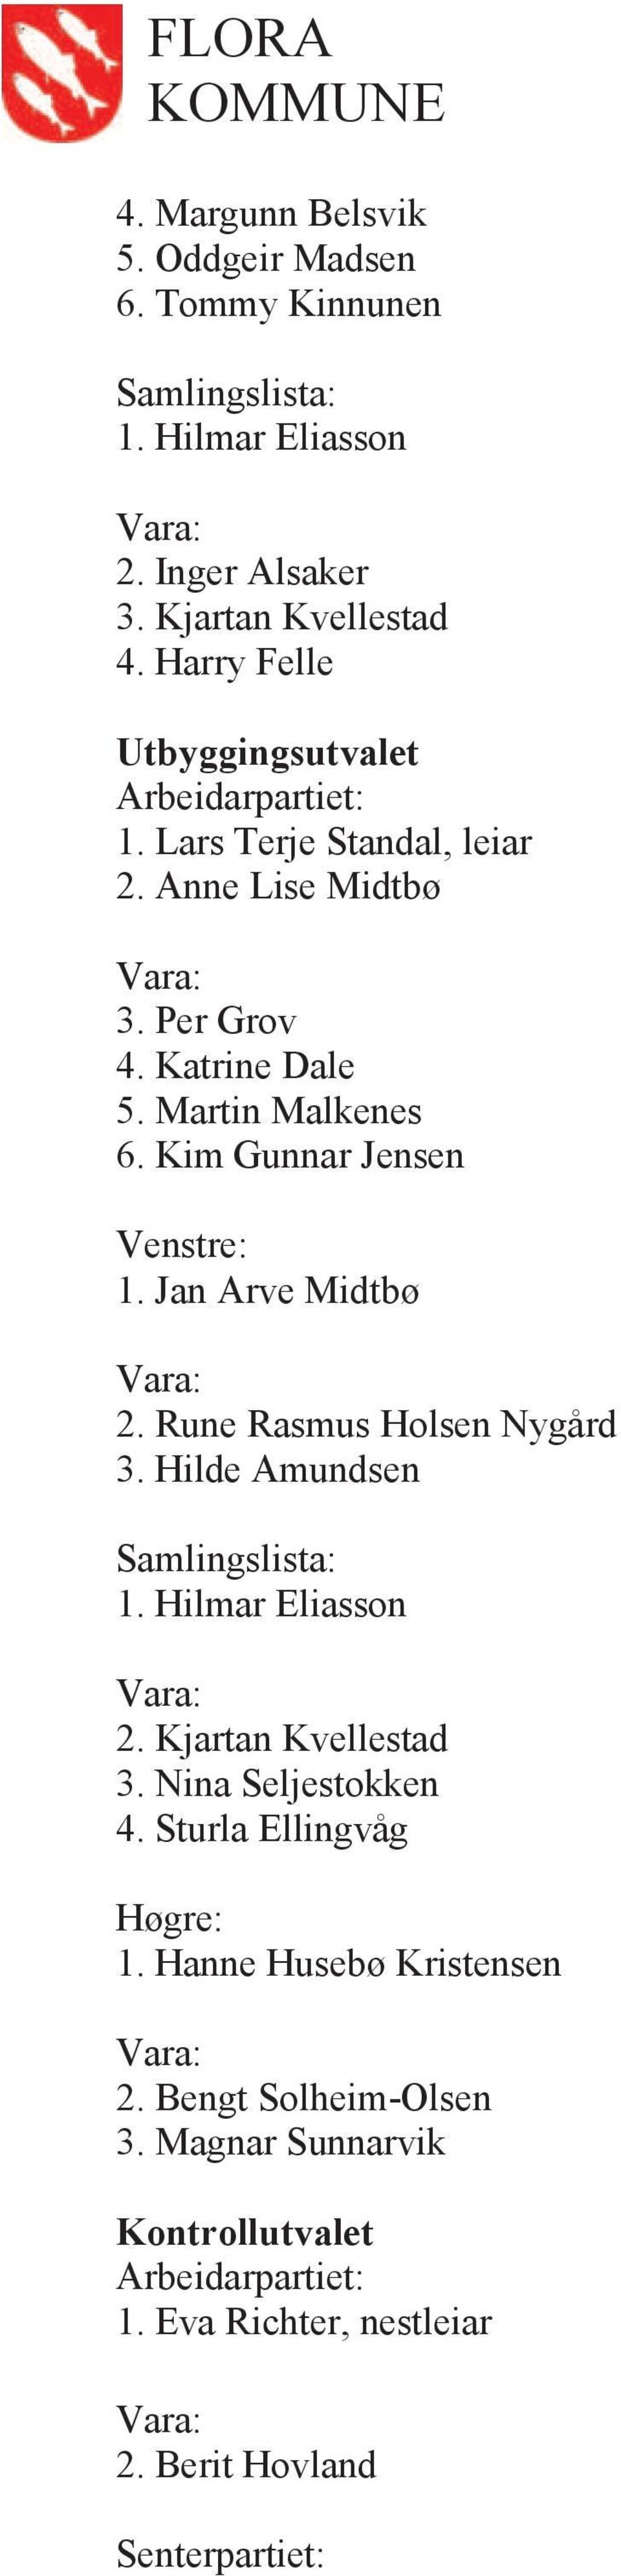 Kim Gunnar Jensen 1. Jan Arve Midtbø 2. Rune Rasmus Holsen Nygård 3. Hilde Amundsen Samlingslista: 1. Hilmar Eliasson 2. Kjartan Kvellestad 3.